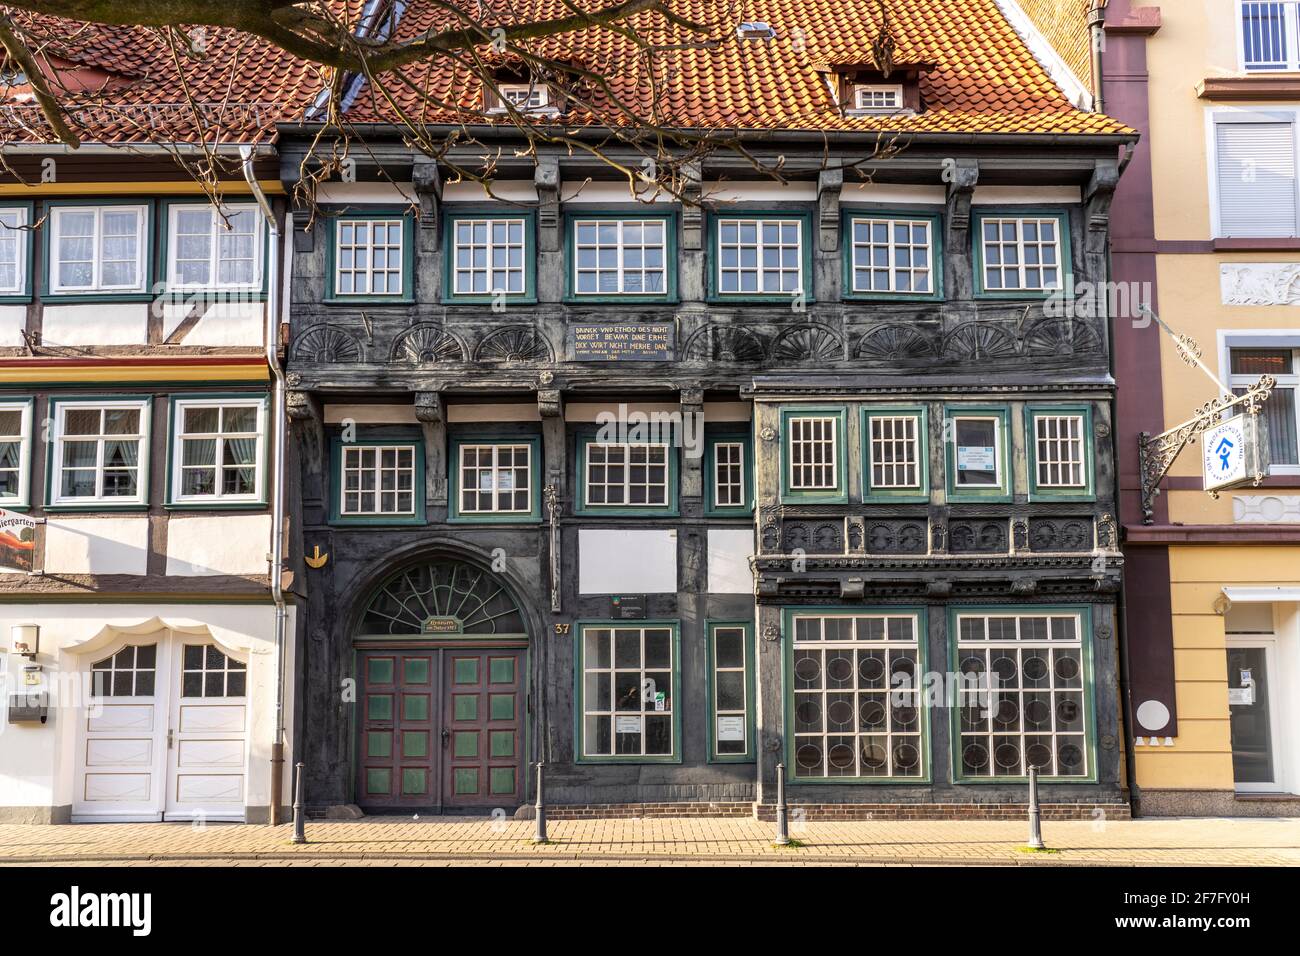 Historischer Ständer-Geschossbau von 1566 in Northeim, Niedersachsen, Deutschland   |  historic house built in 1566 in Northeim, Lower Saxony, Germany Stock Photo